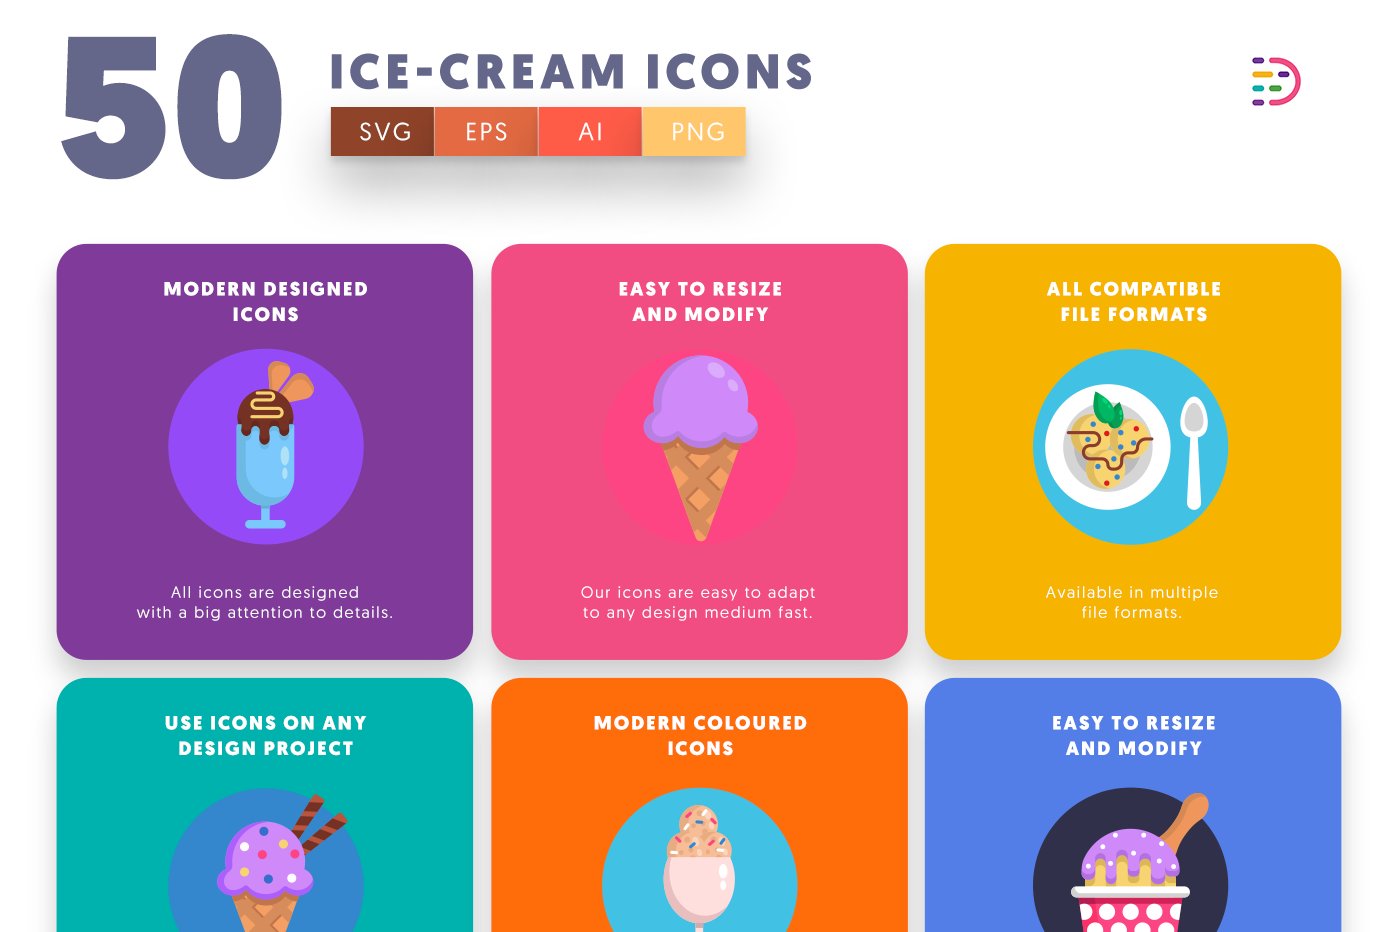 icecream icons cover 5 146